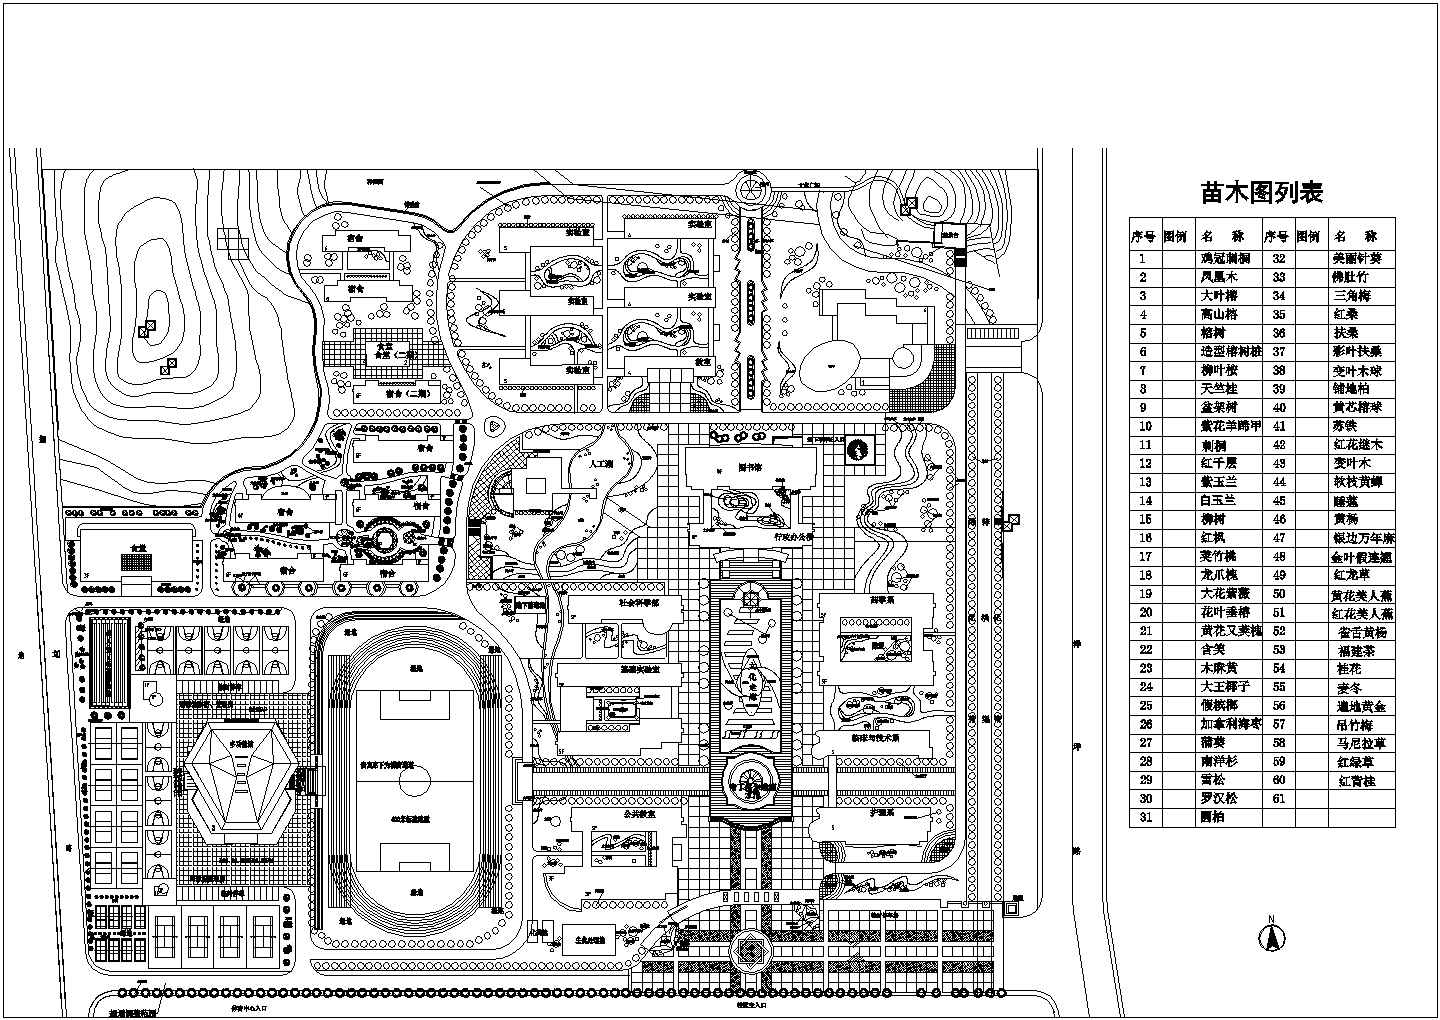 某学校CAD建筑设计总体规划施工图